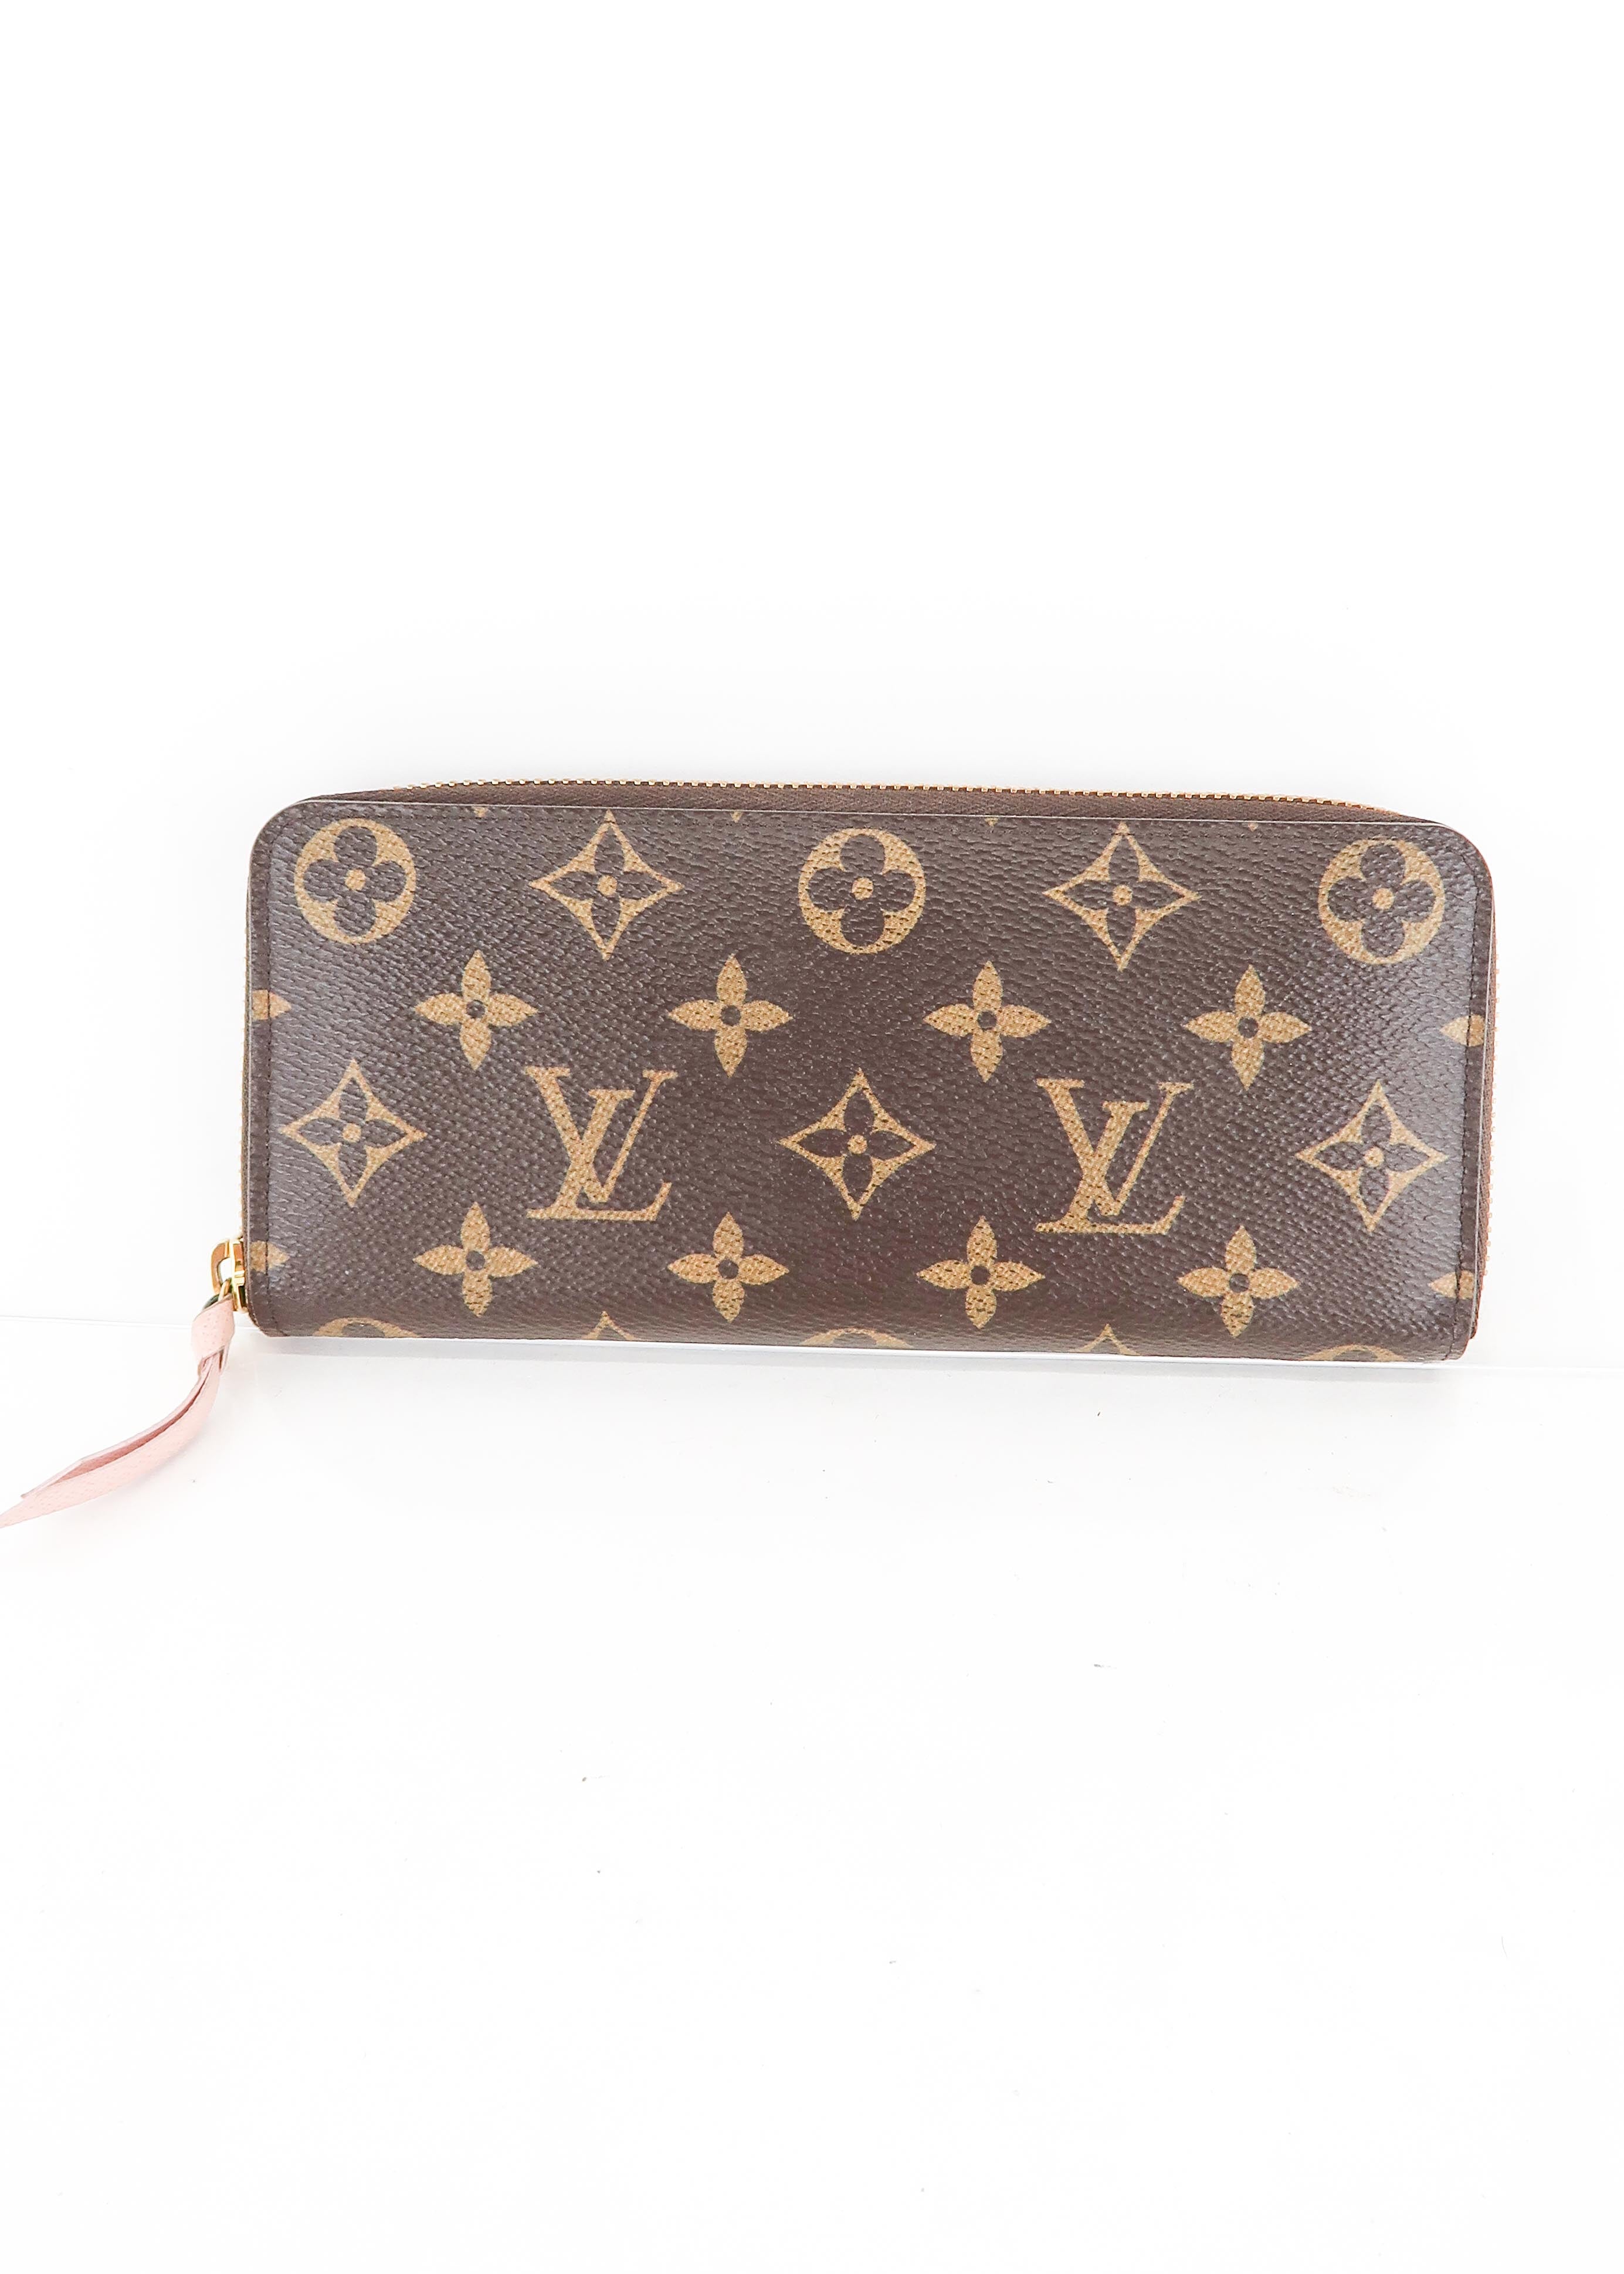 Louis Vuitton - Card Holder - Monogram/Fuchsia - Pre Loved